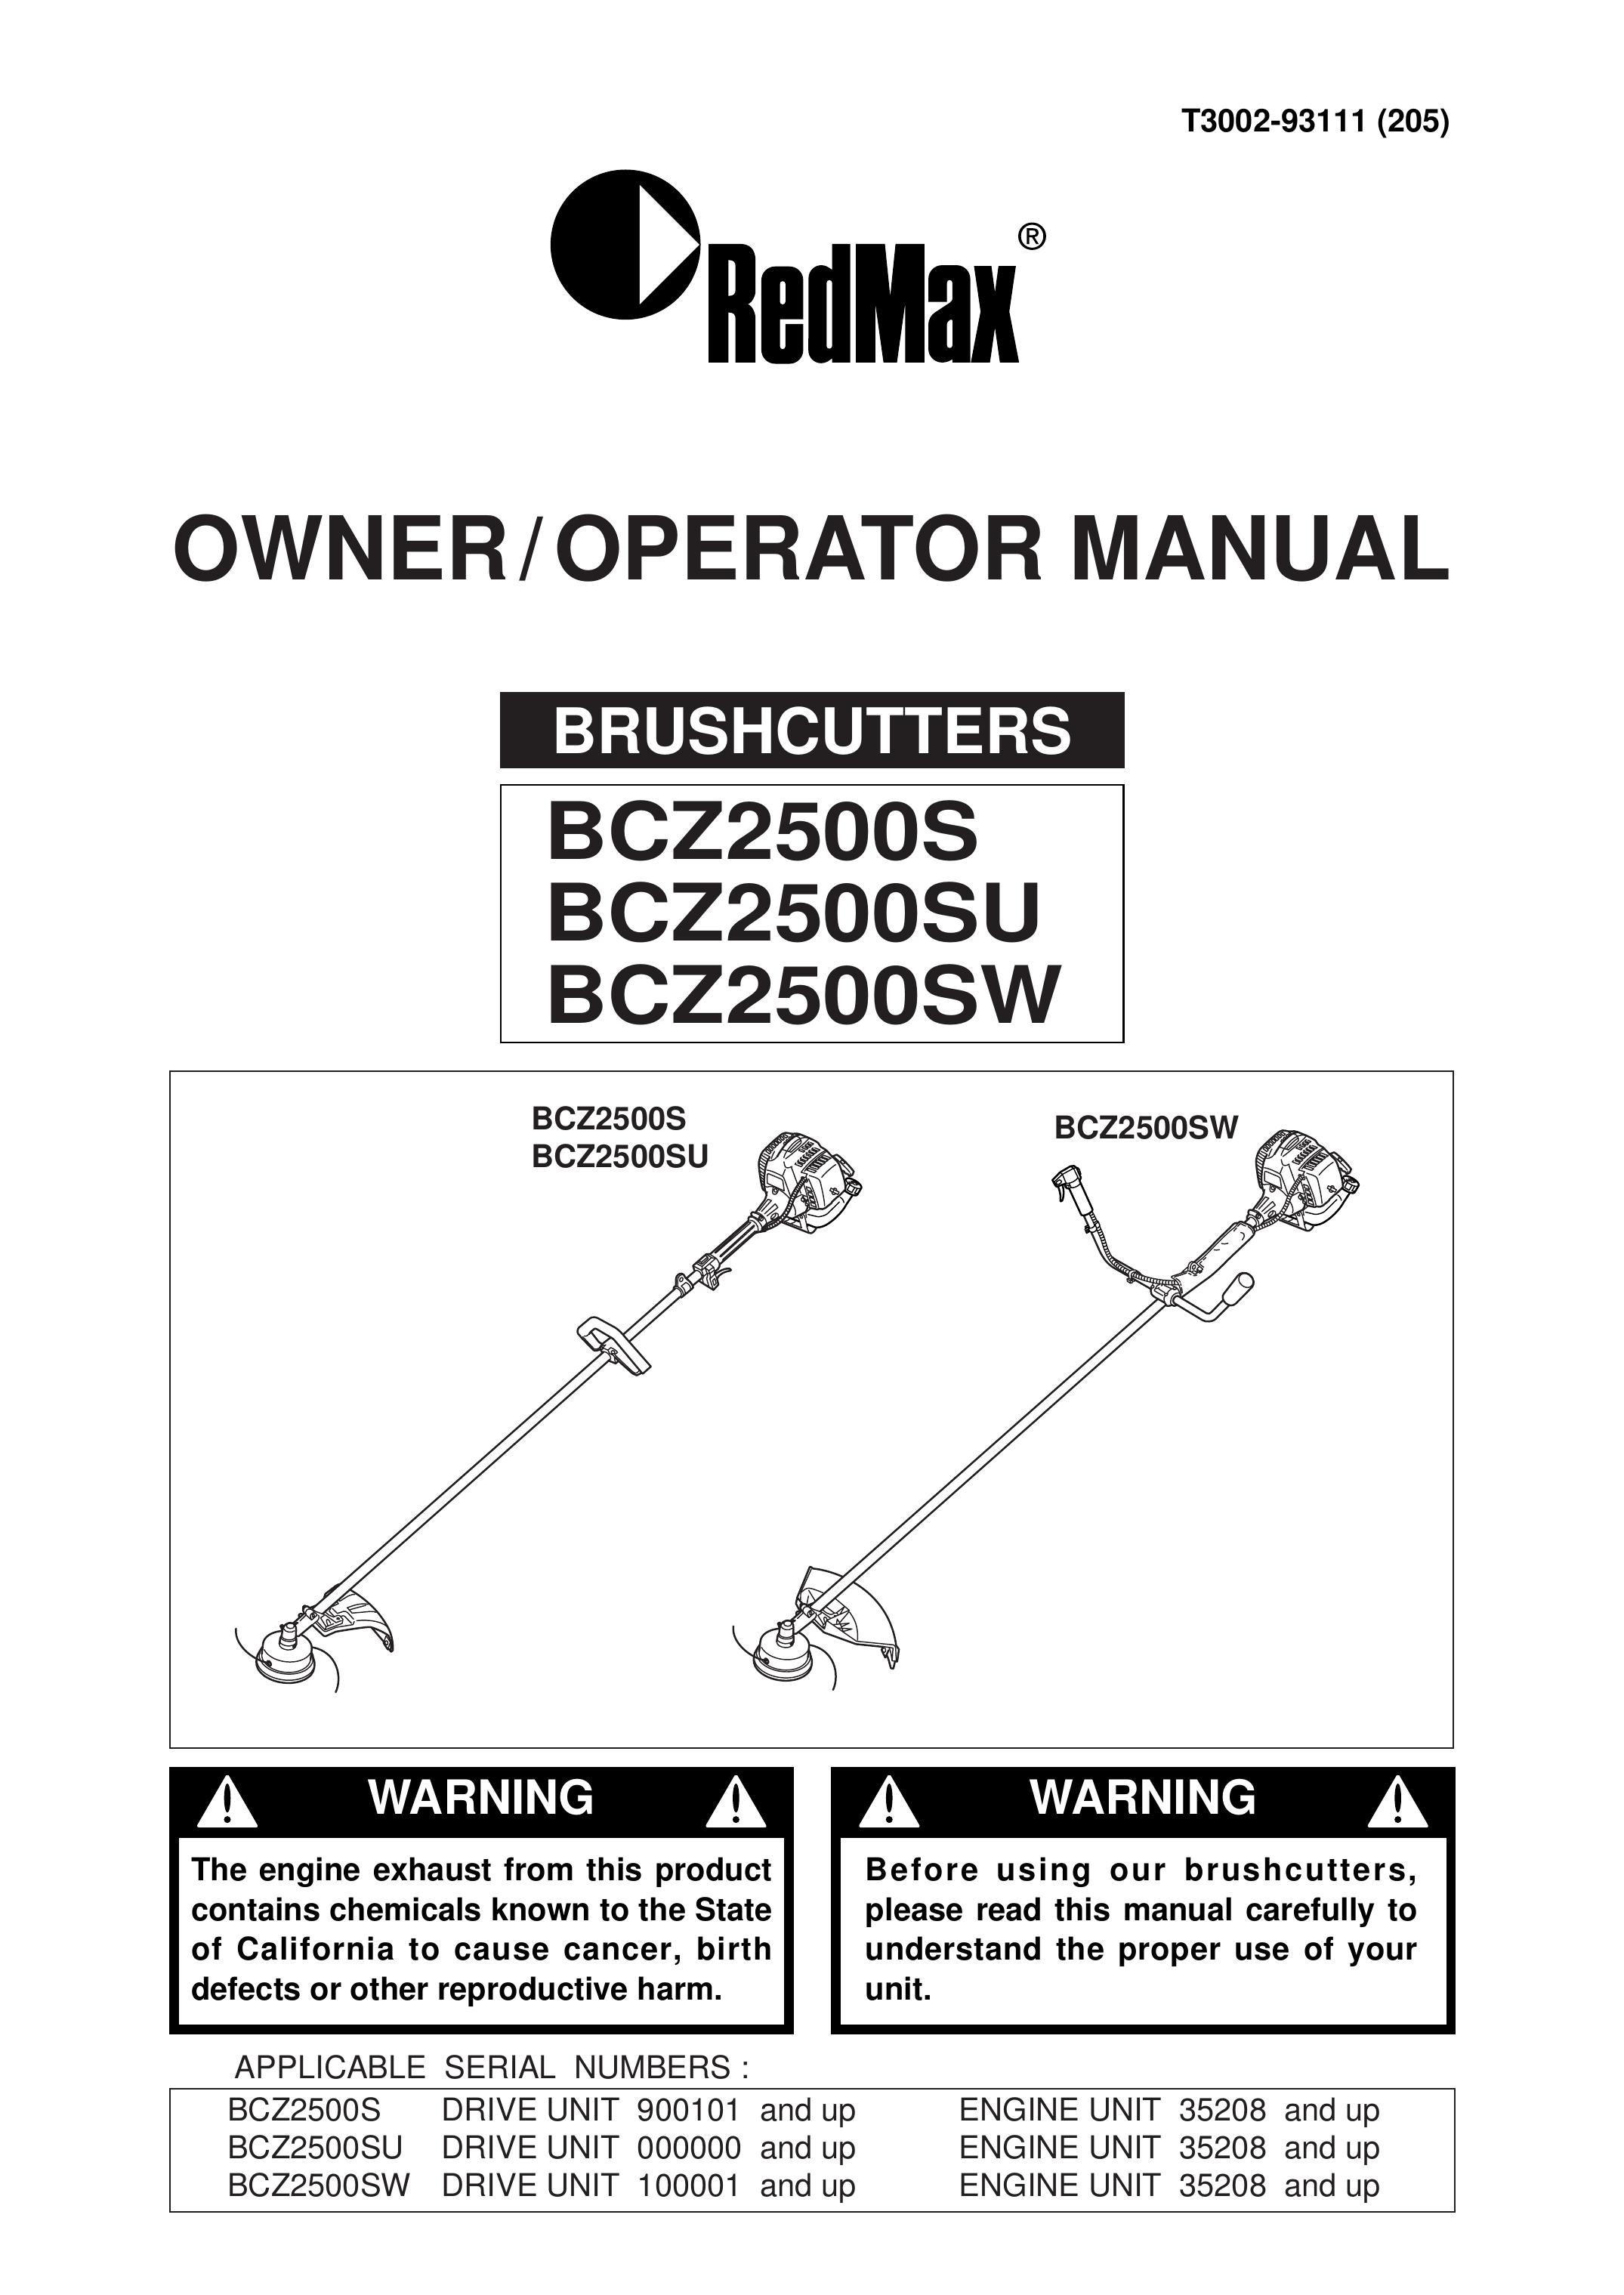 RedMax BCZ2500SU Brush Cutter User Manual